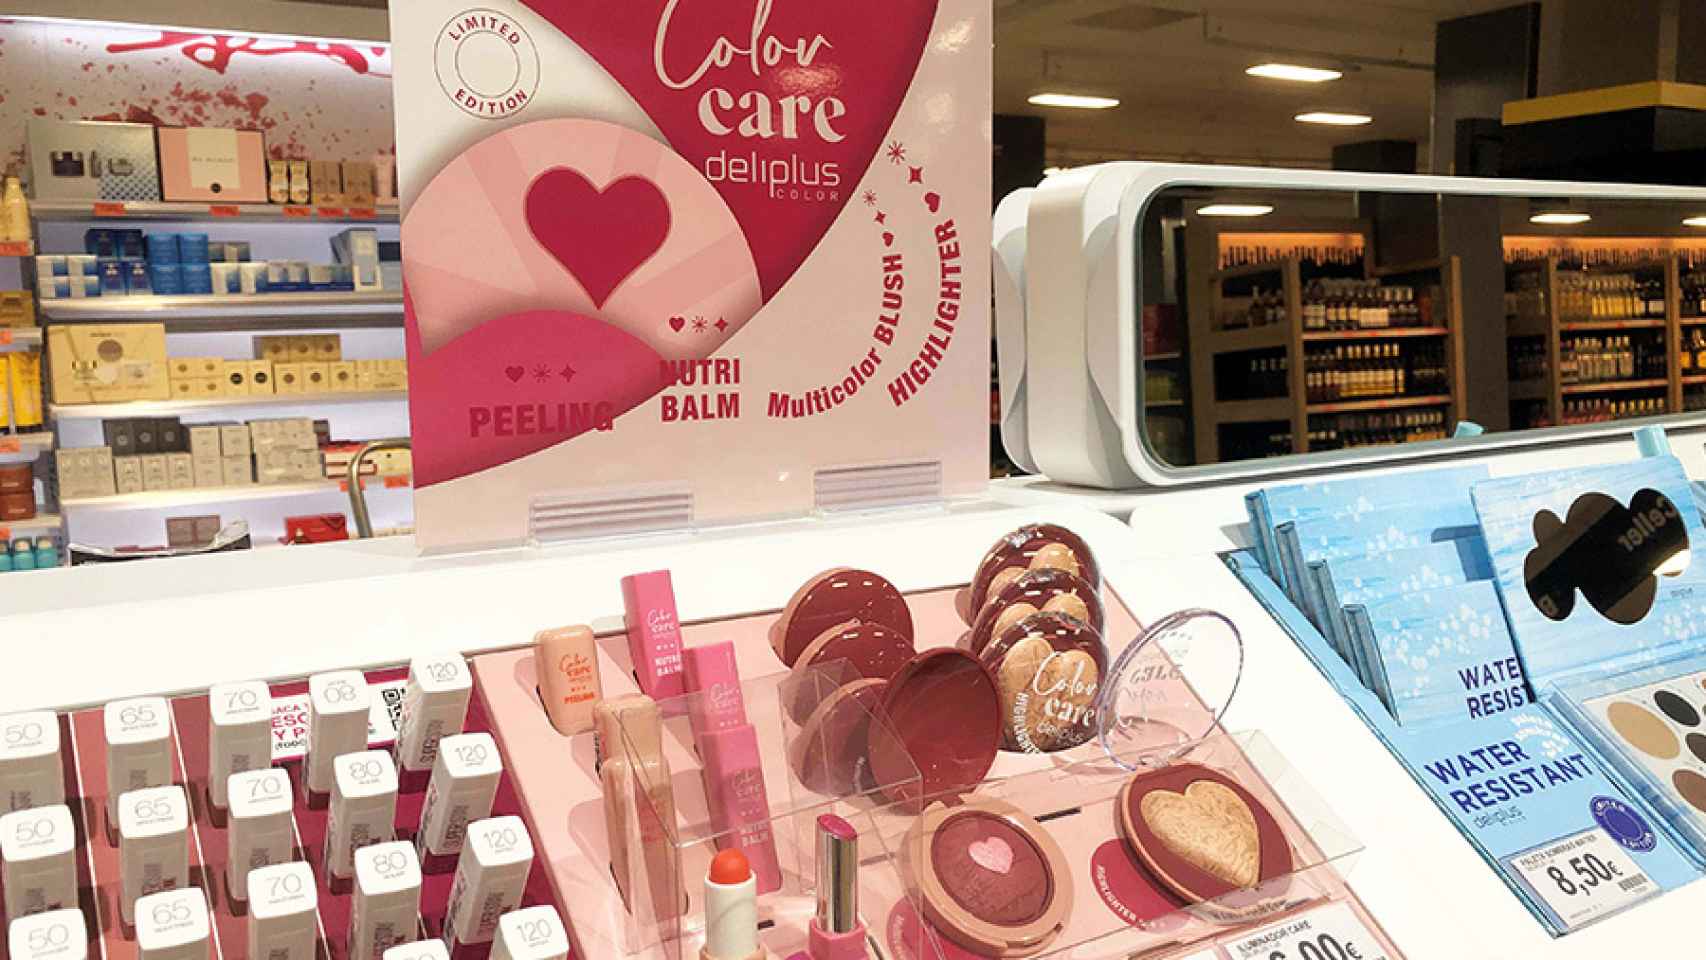 La línea Color Care  llega con fuerza al supermercado entre tonos rosados y corazones